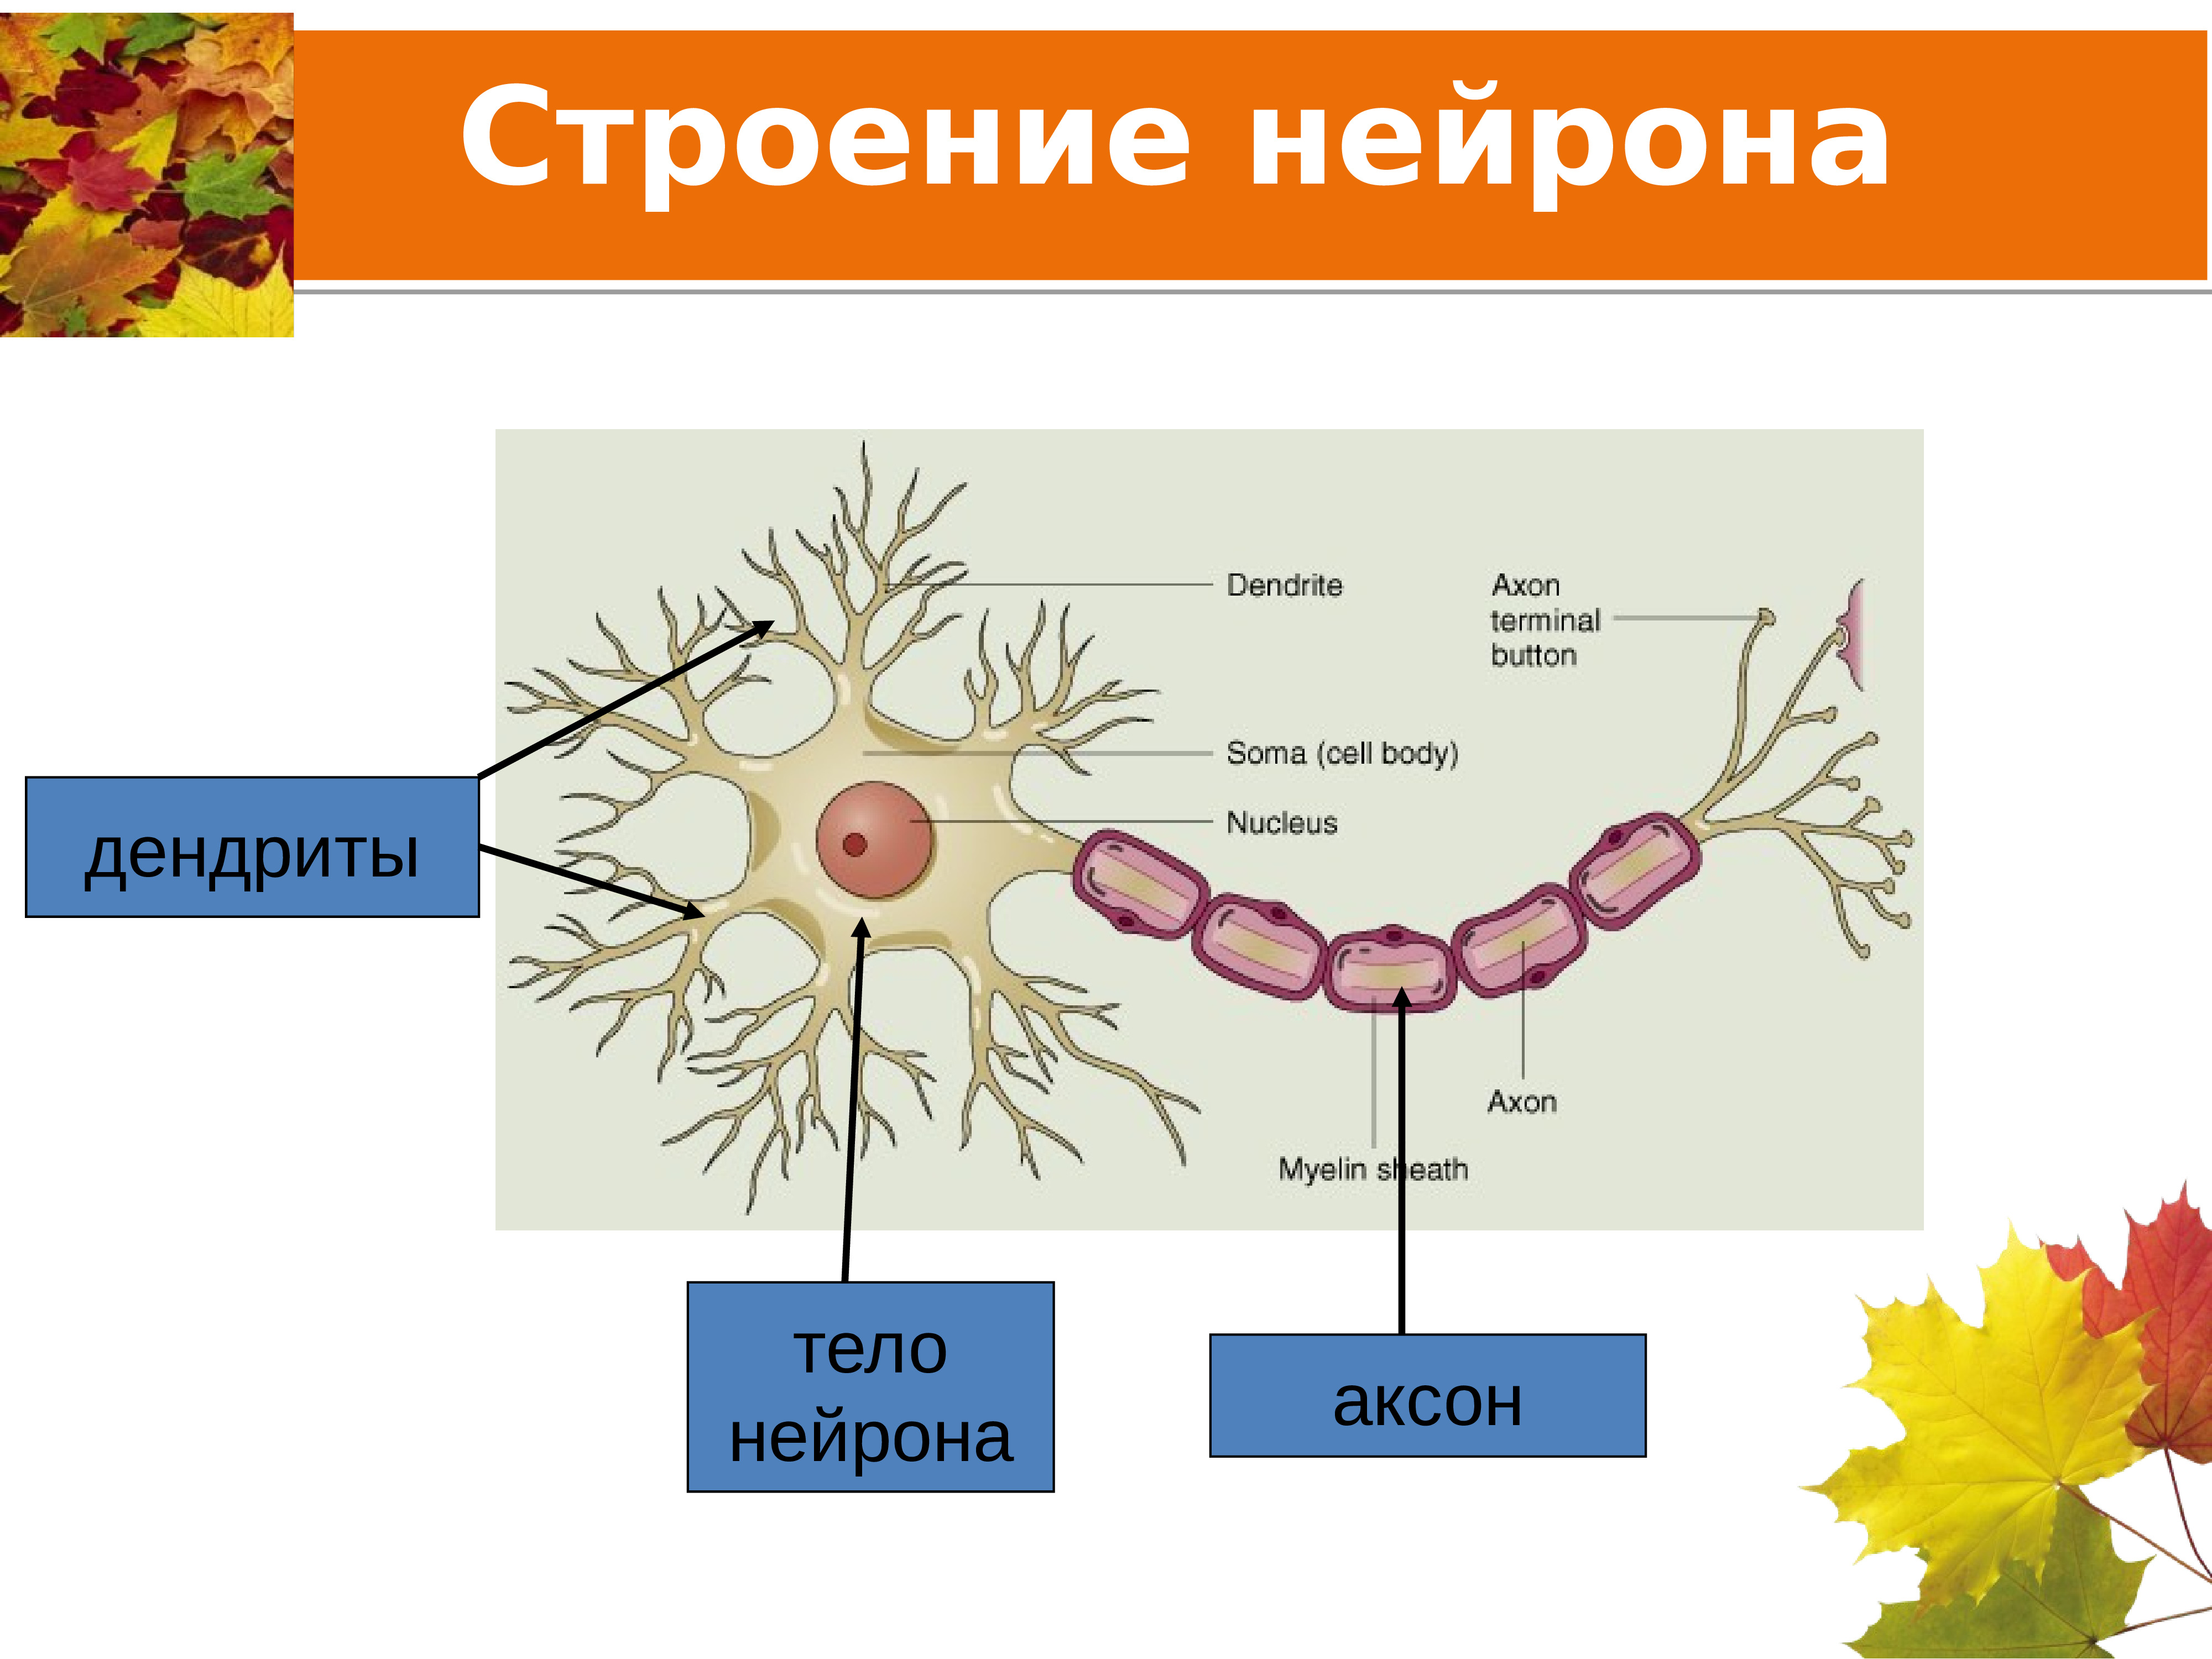 Название нервной клетки. Аксон строение нейрона. Строение аксона нервной клетки. Строения нейрона дендриты. Нервная ткань Аксон строение.